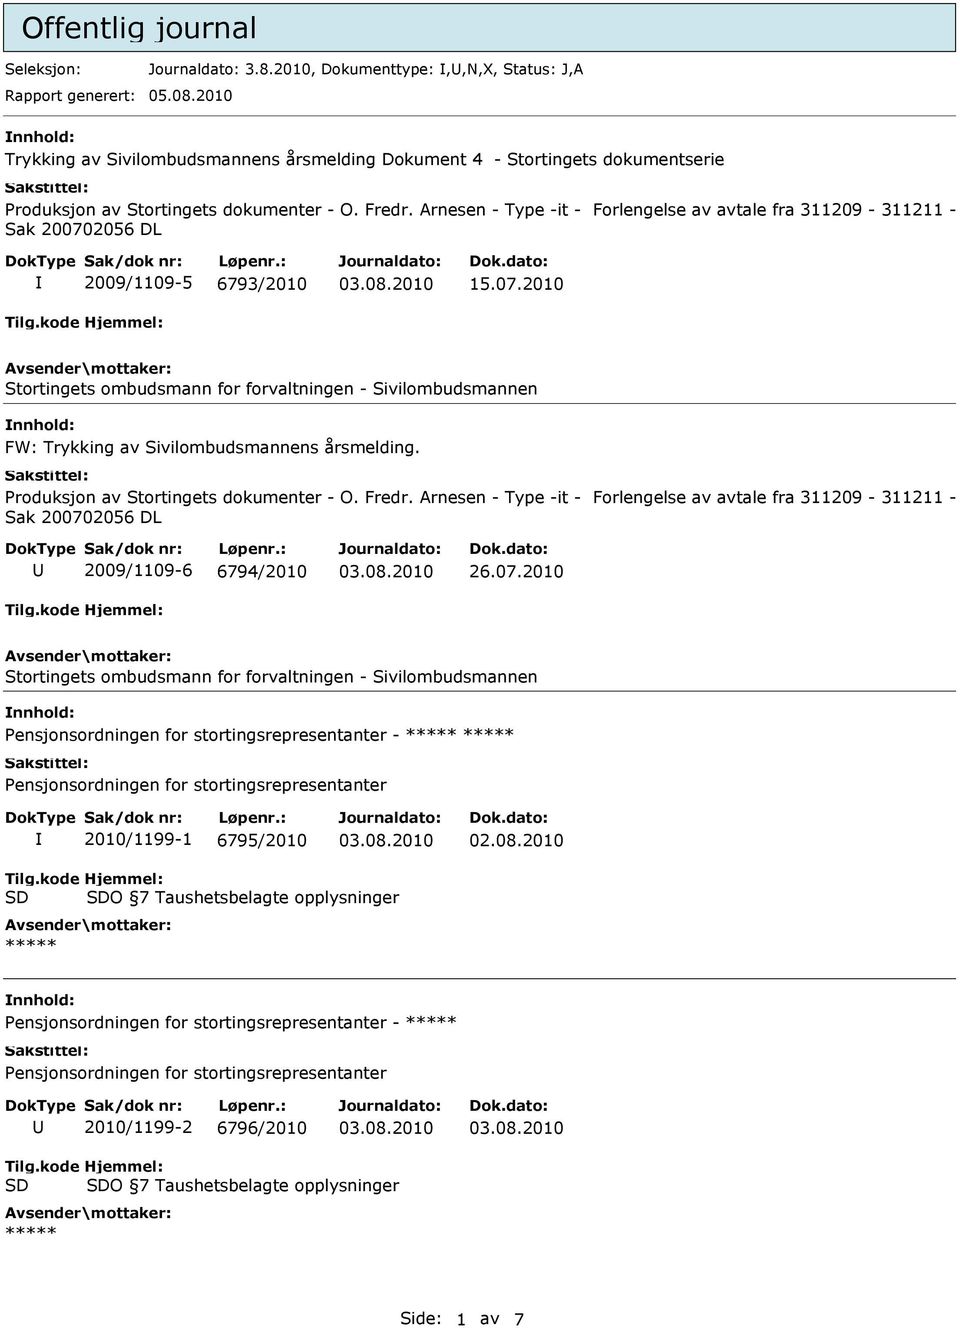 Arnesen - Type -it - Forlengelse av avtale fra 311209-311211 - Sak 200702056 DL 2009/1109-5 6793/2010 15.07.2010 Stortingets ombudsmann for forvaltningen - Sivilombudsmannen FW: Trykking av Sivilombudsmannens årsmelding.